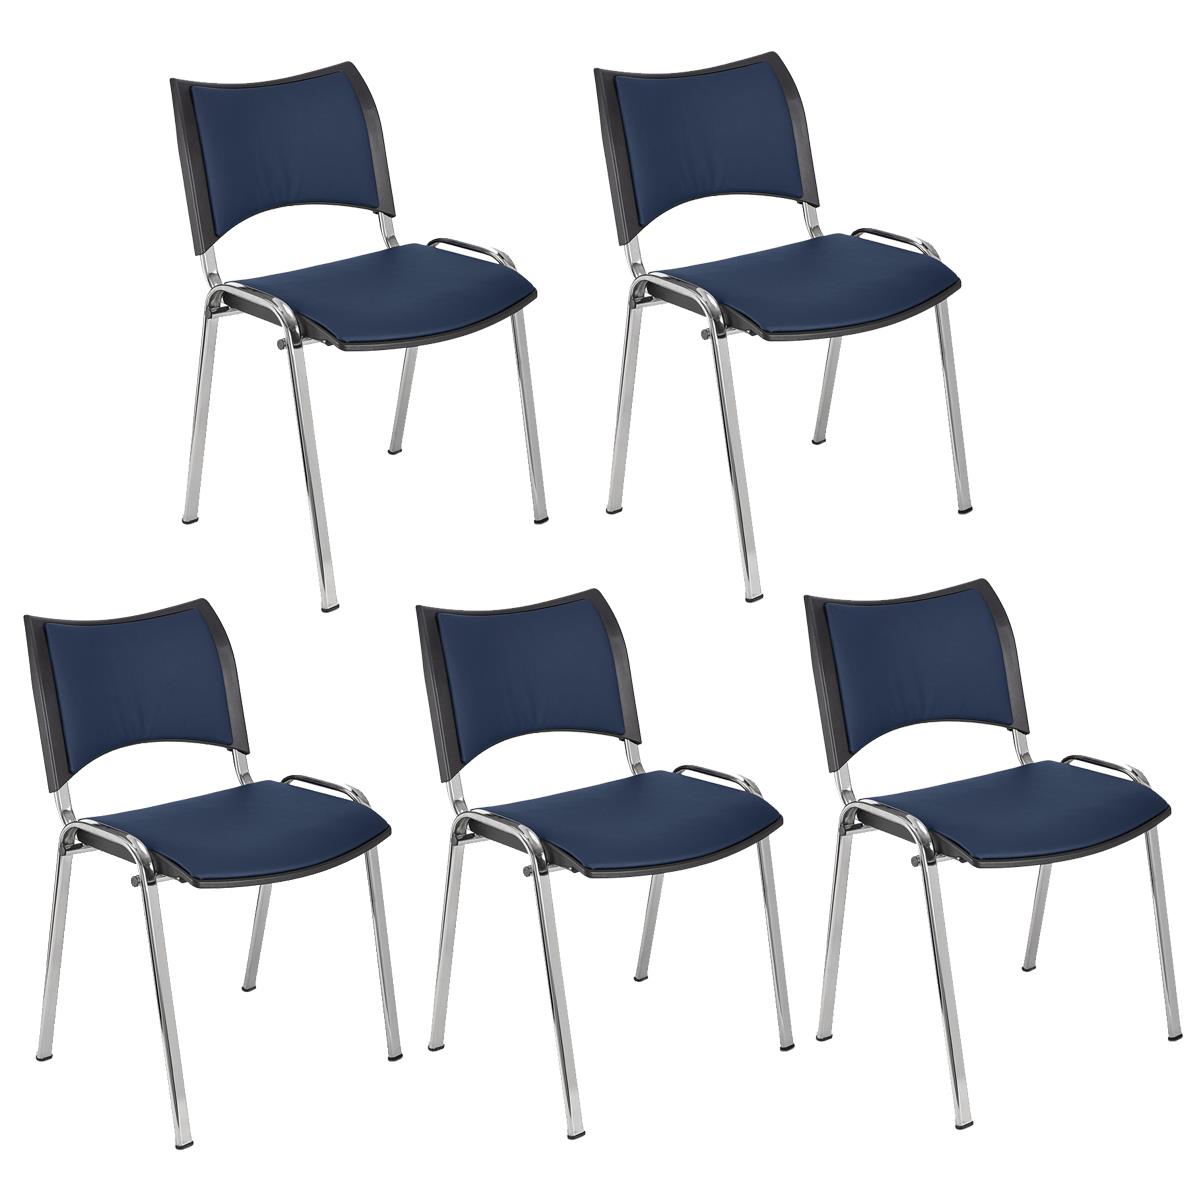 Lote 5 Cadeiras de Visita ROMEL PELE, Prática e Empilhável, Pernas Cromadas, Azul